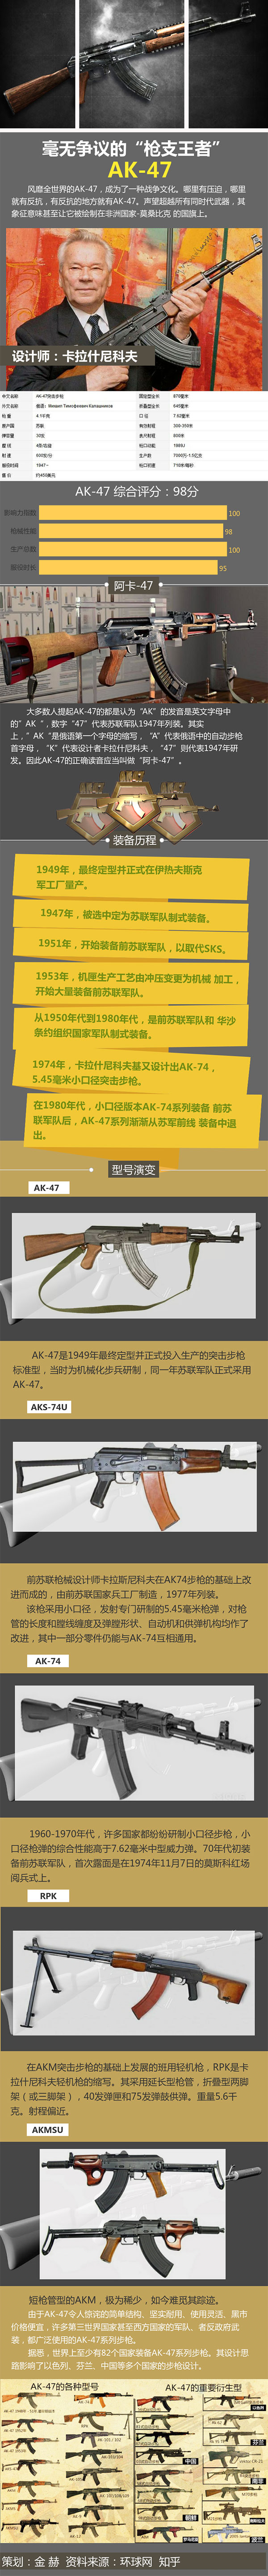 【图鉴·单兵武器】毫无争议的“枪支王者”AK-47